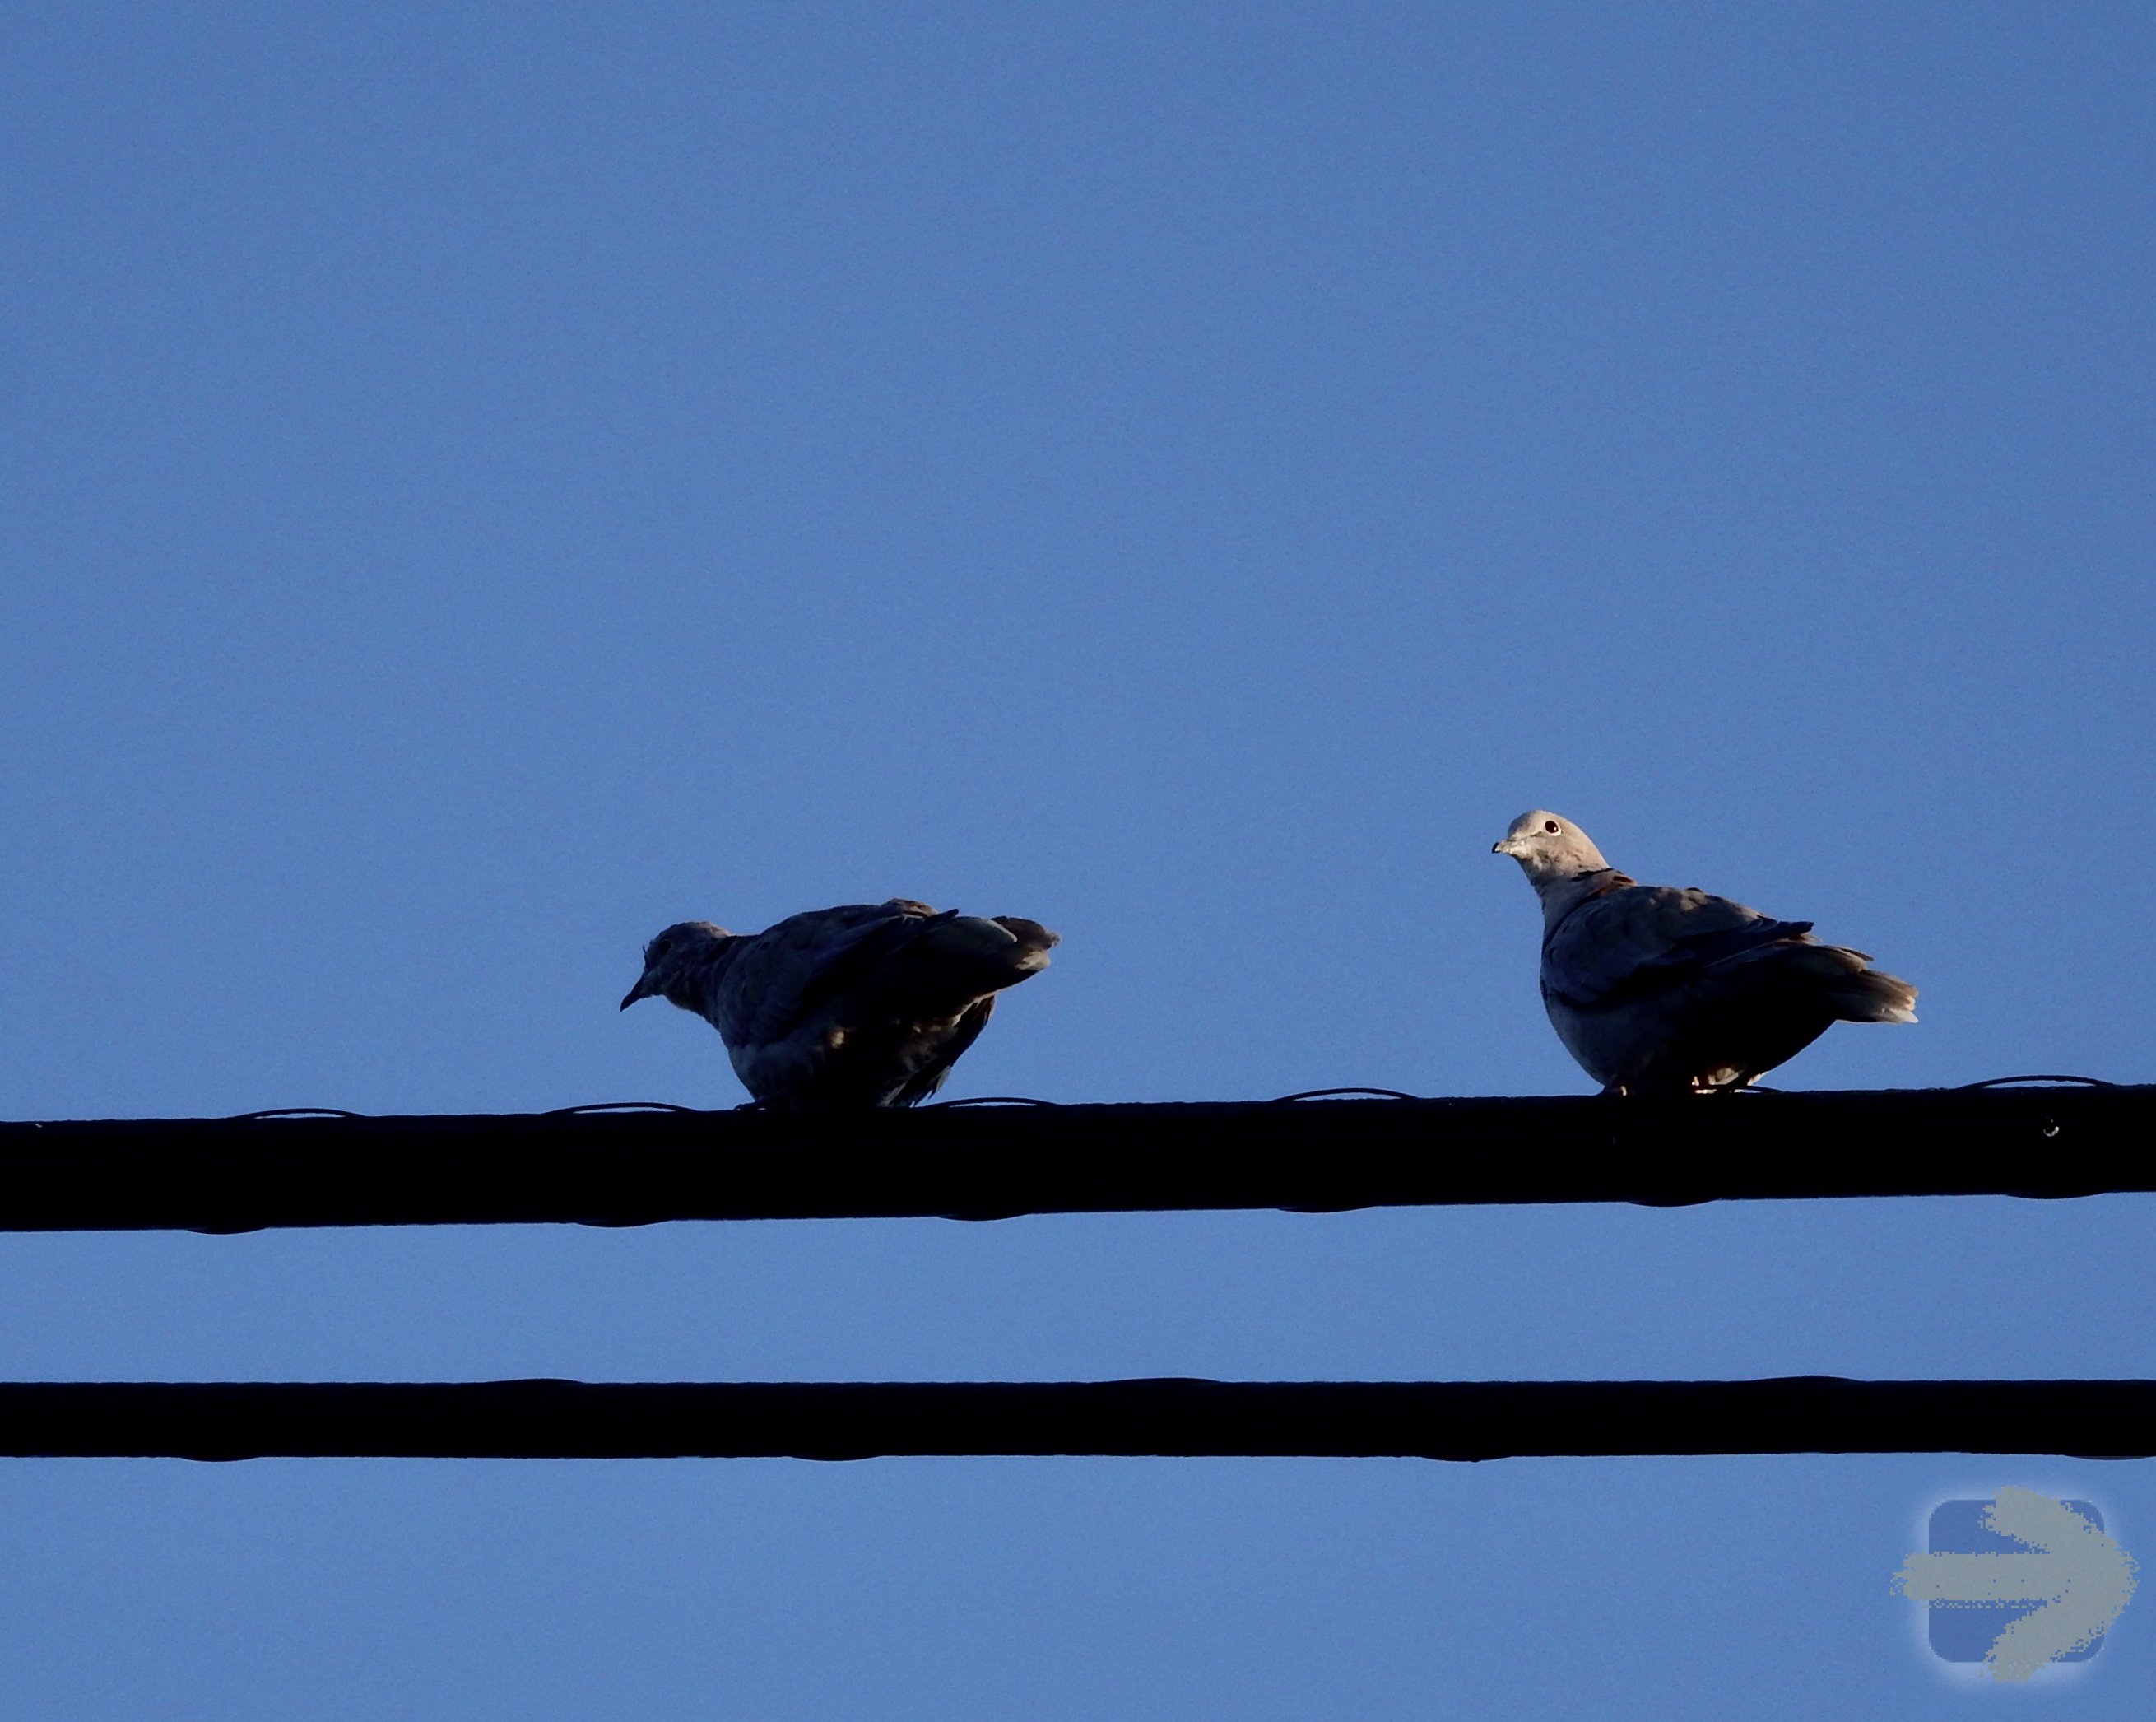 Birds on a wire, taking a break.